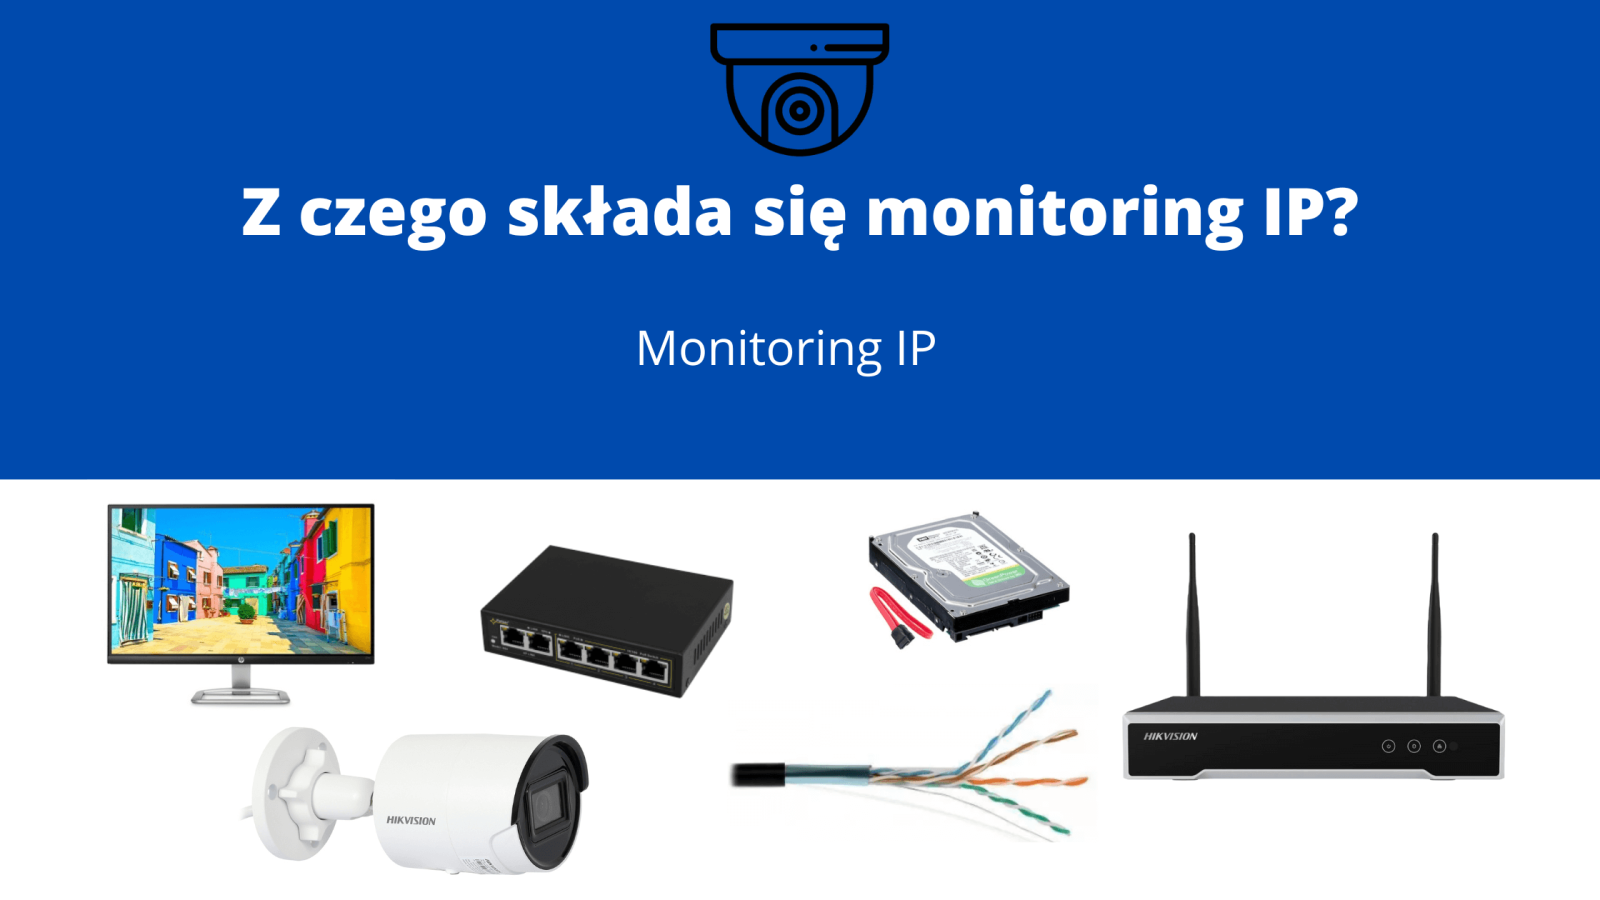 Z czego składa się monitoring IP?